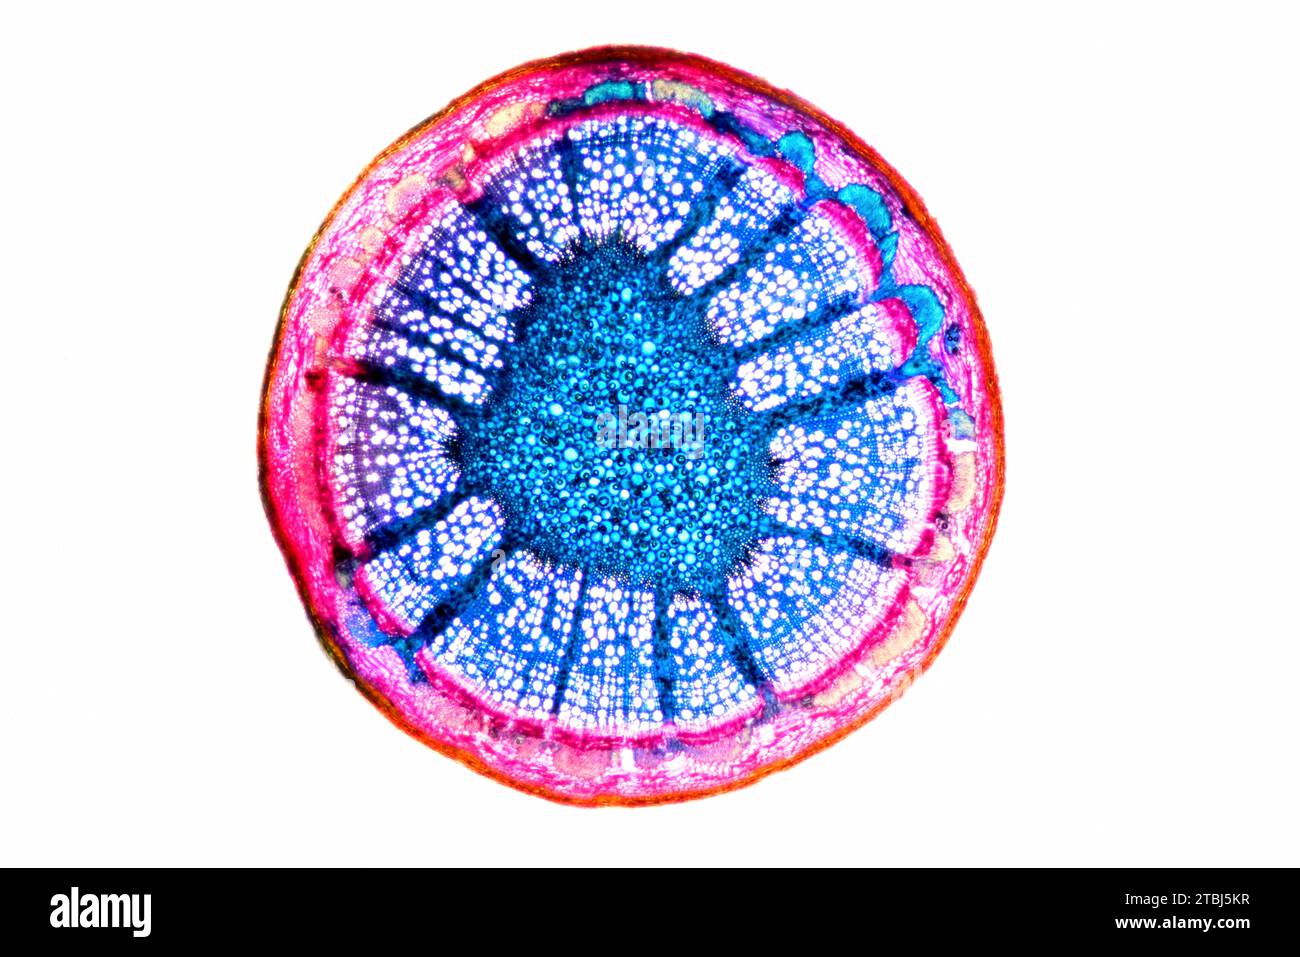 Eudicot-Stamm (Fagus sylvatica) mit Epidermis, Collenchym, Cortex, Parenchym, Piths, Phloem und Xylem. Optisches Mikroskop X40. Stockfoto